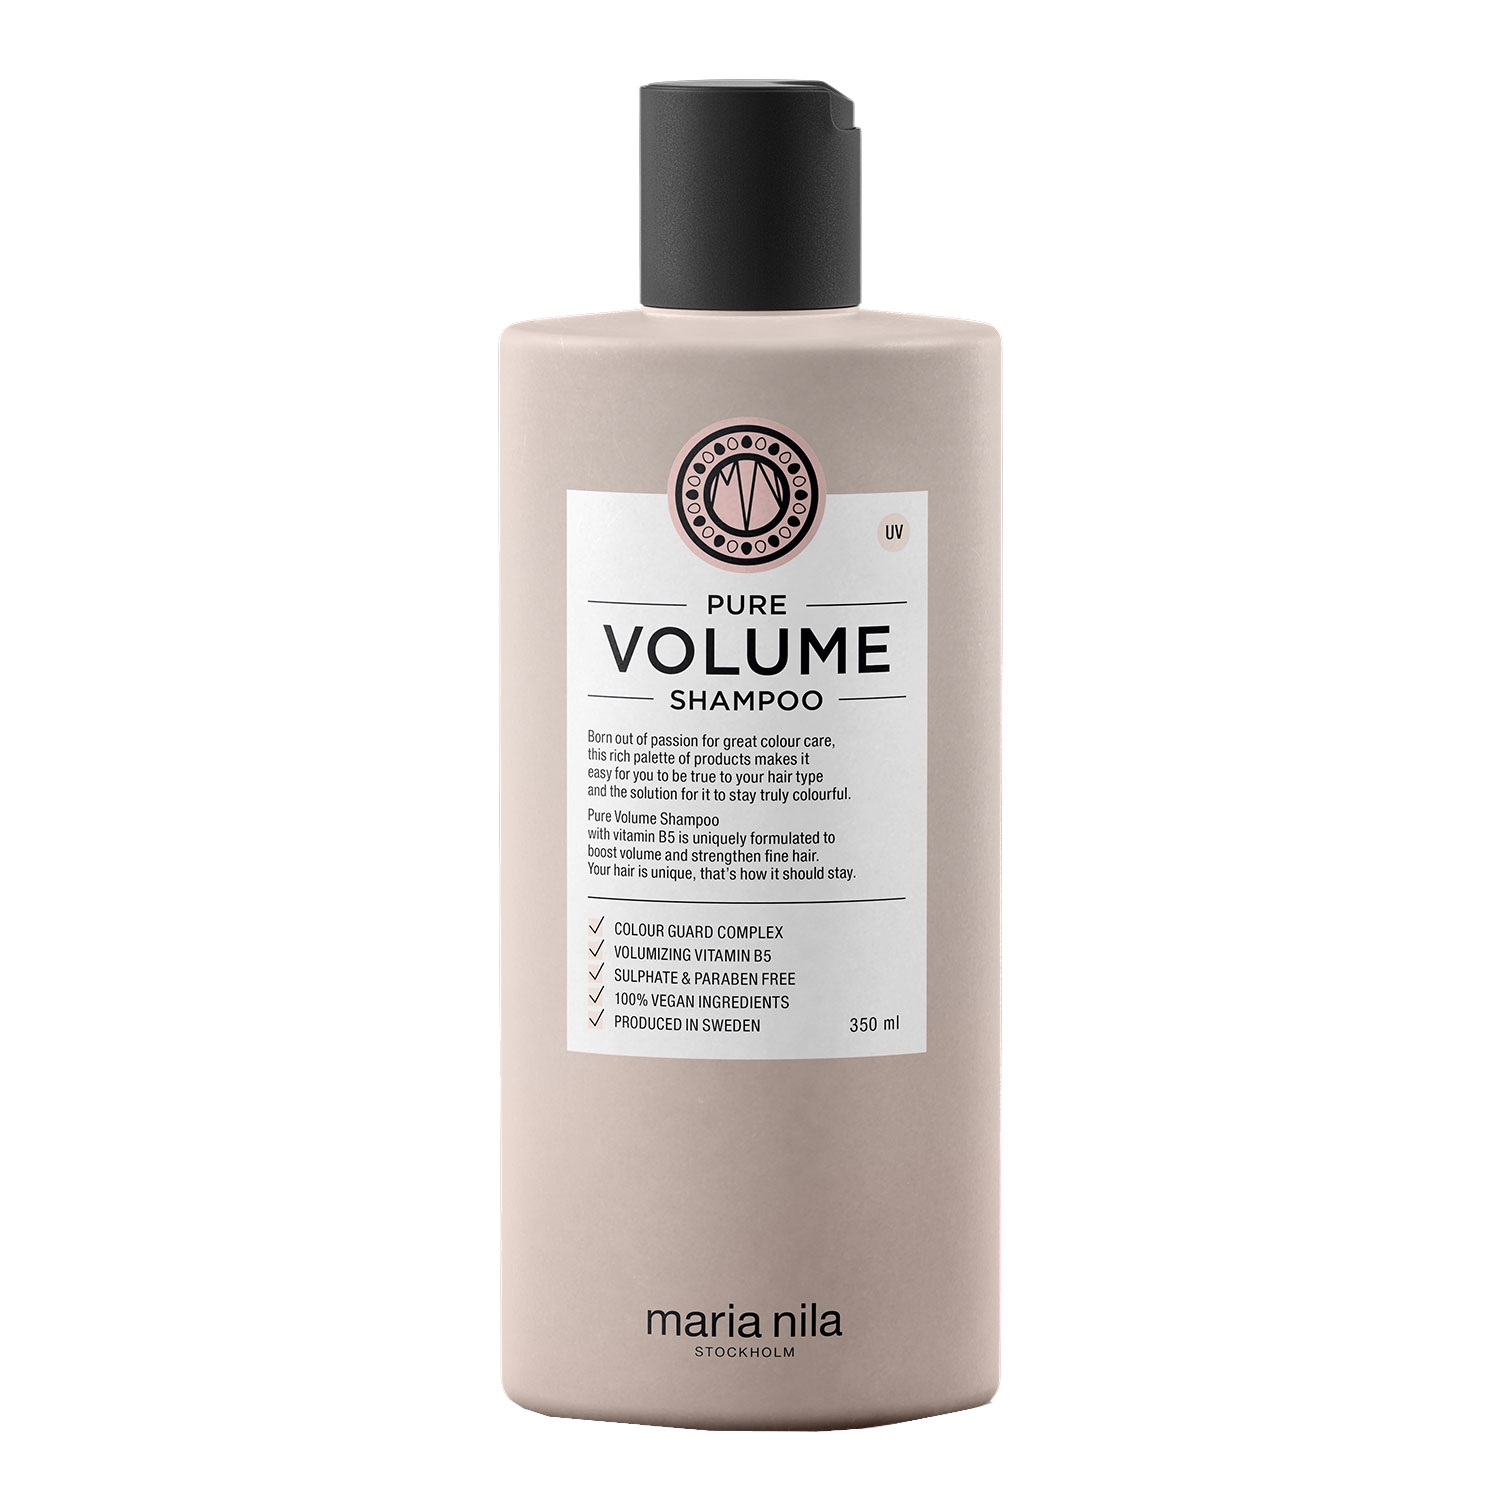 Produktbild von Care & Style - Pure Volume Shampoo